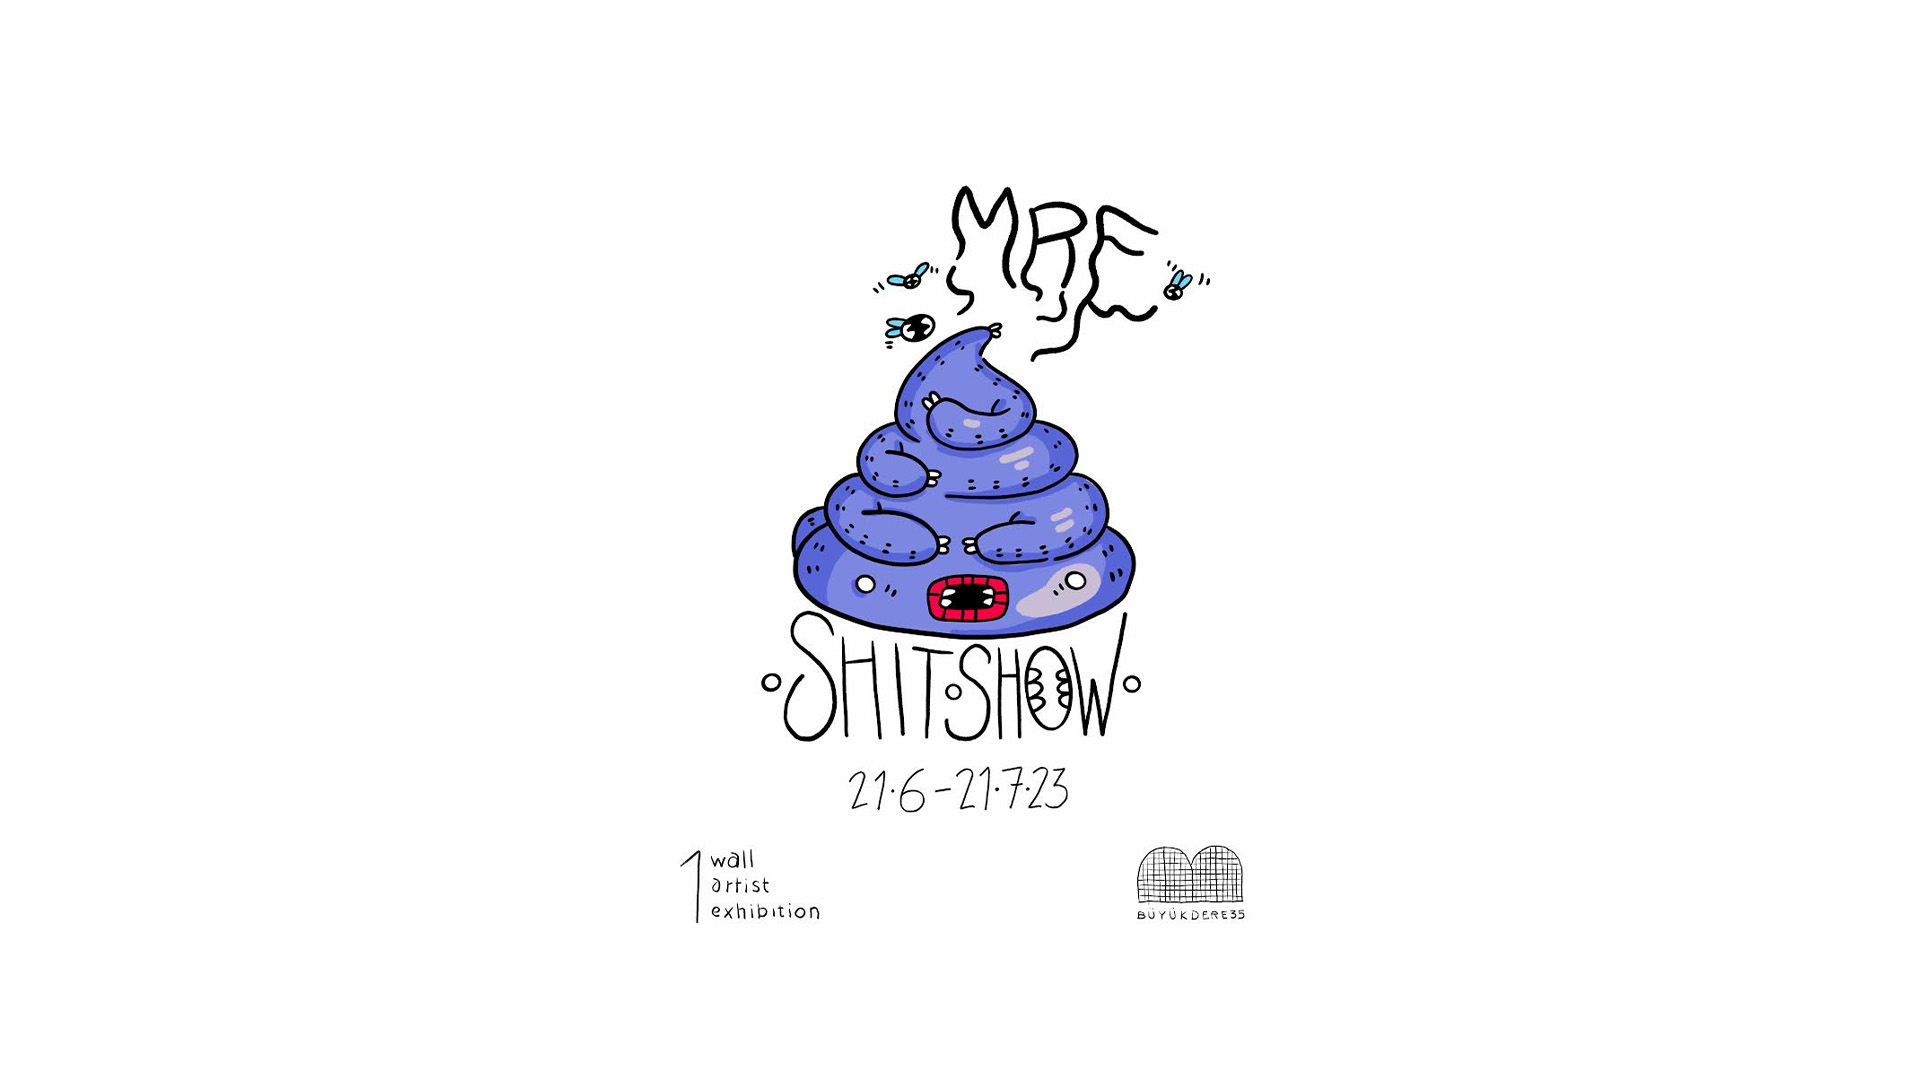 MRE'nin "Shitshow" İsimli Sergisi Büyükdere35'de!